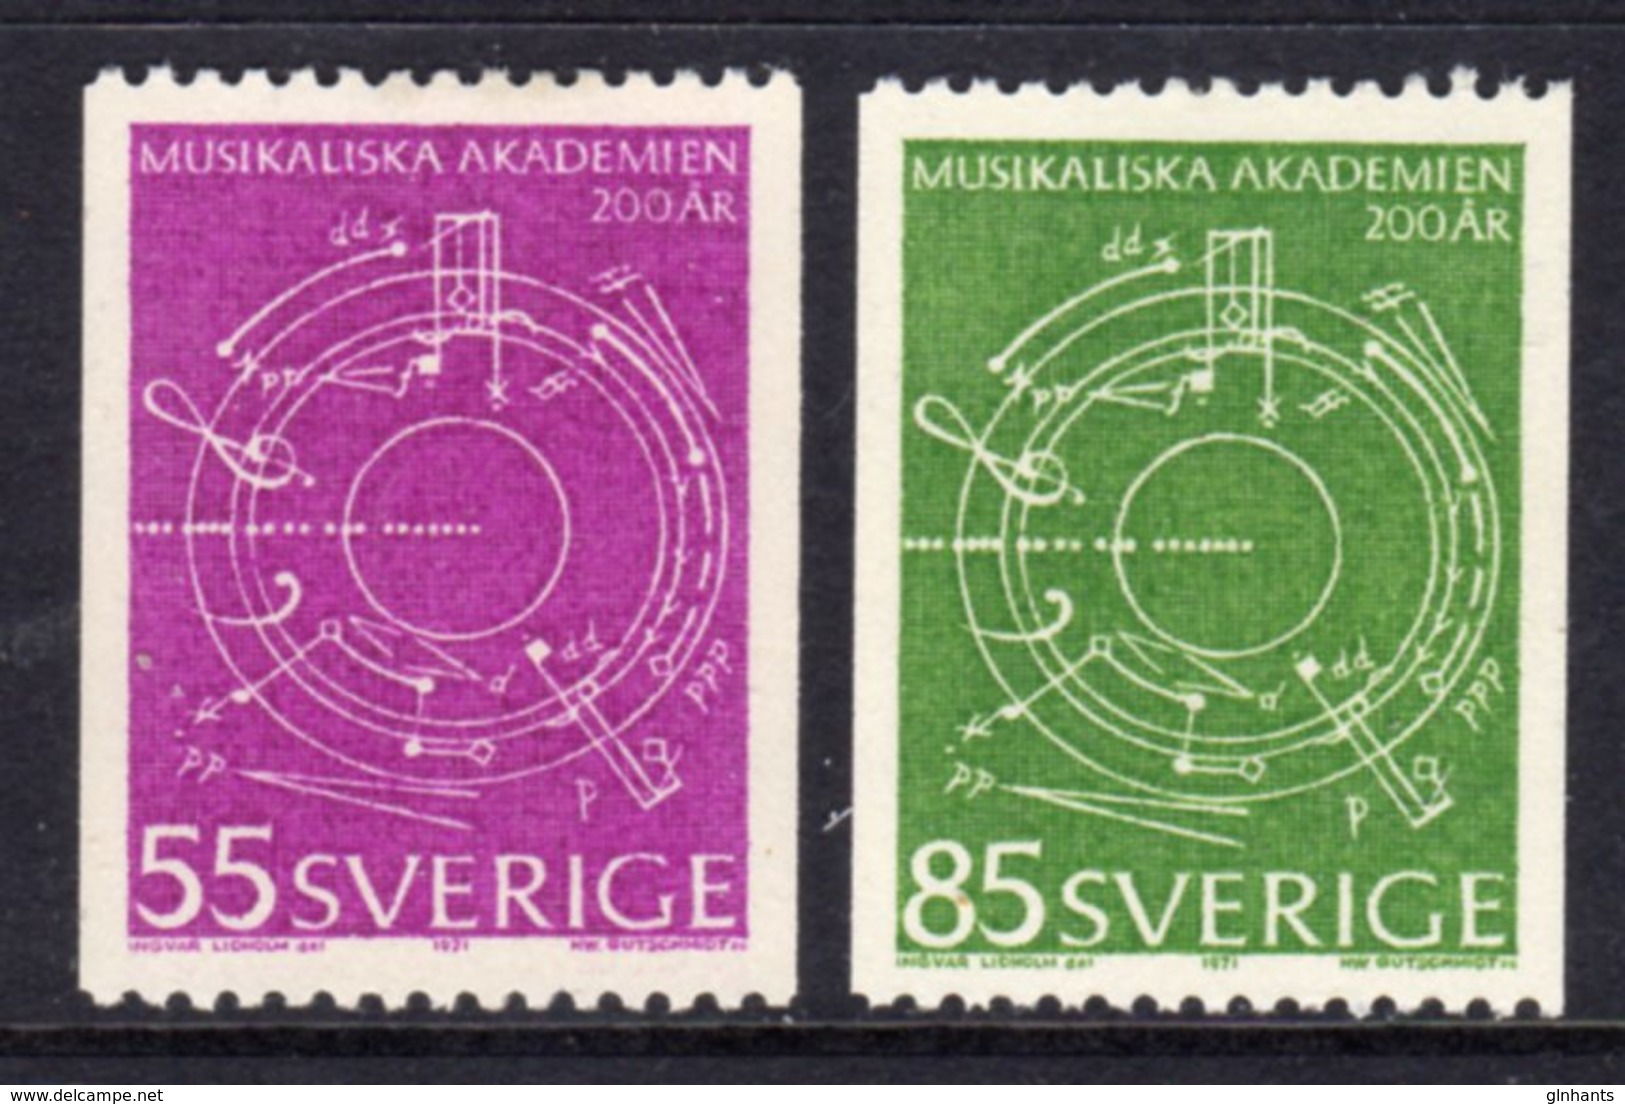 SWEDEN - 1971 MUSIC ANNIVERSARY SET (2V) FINE MNH ** SG 650-651 - Unused Stamps